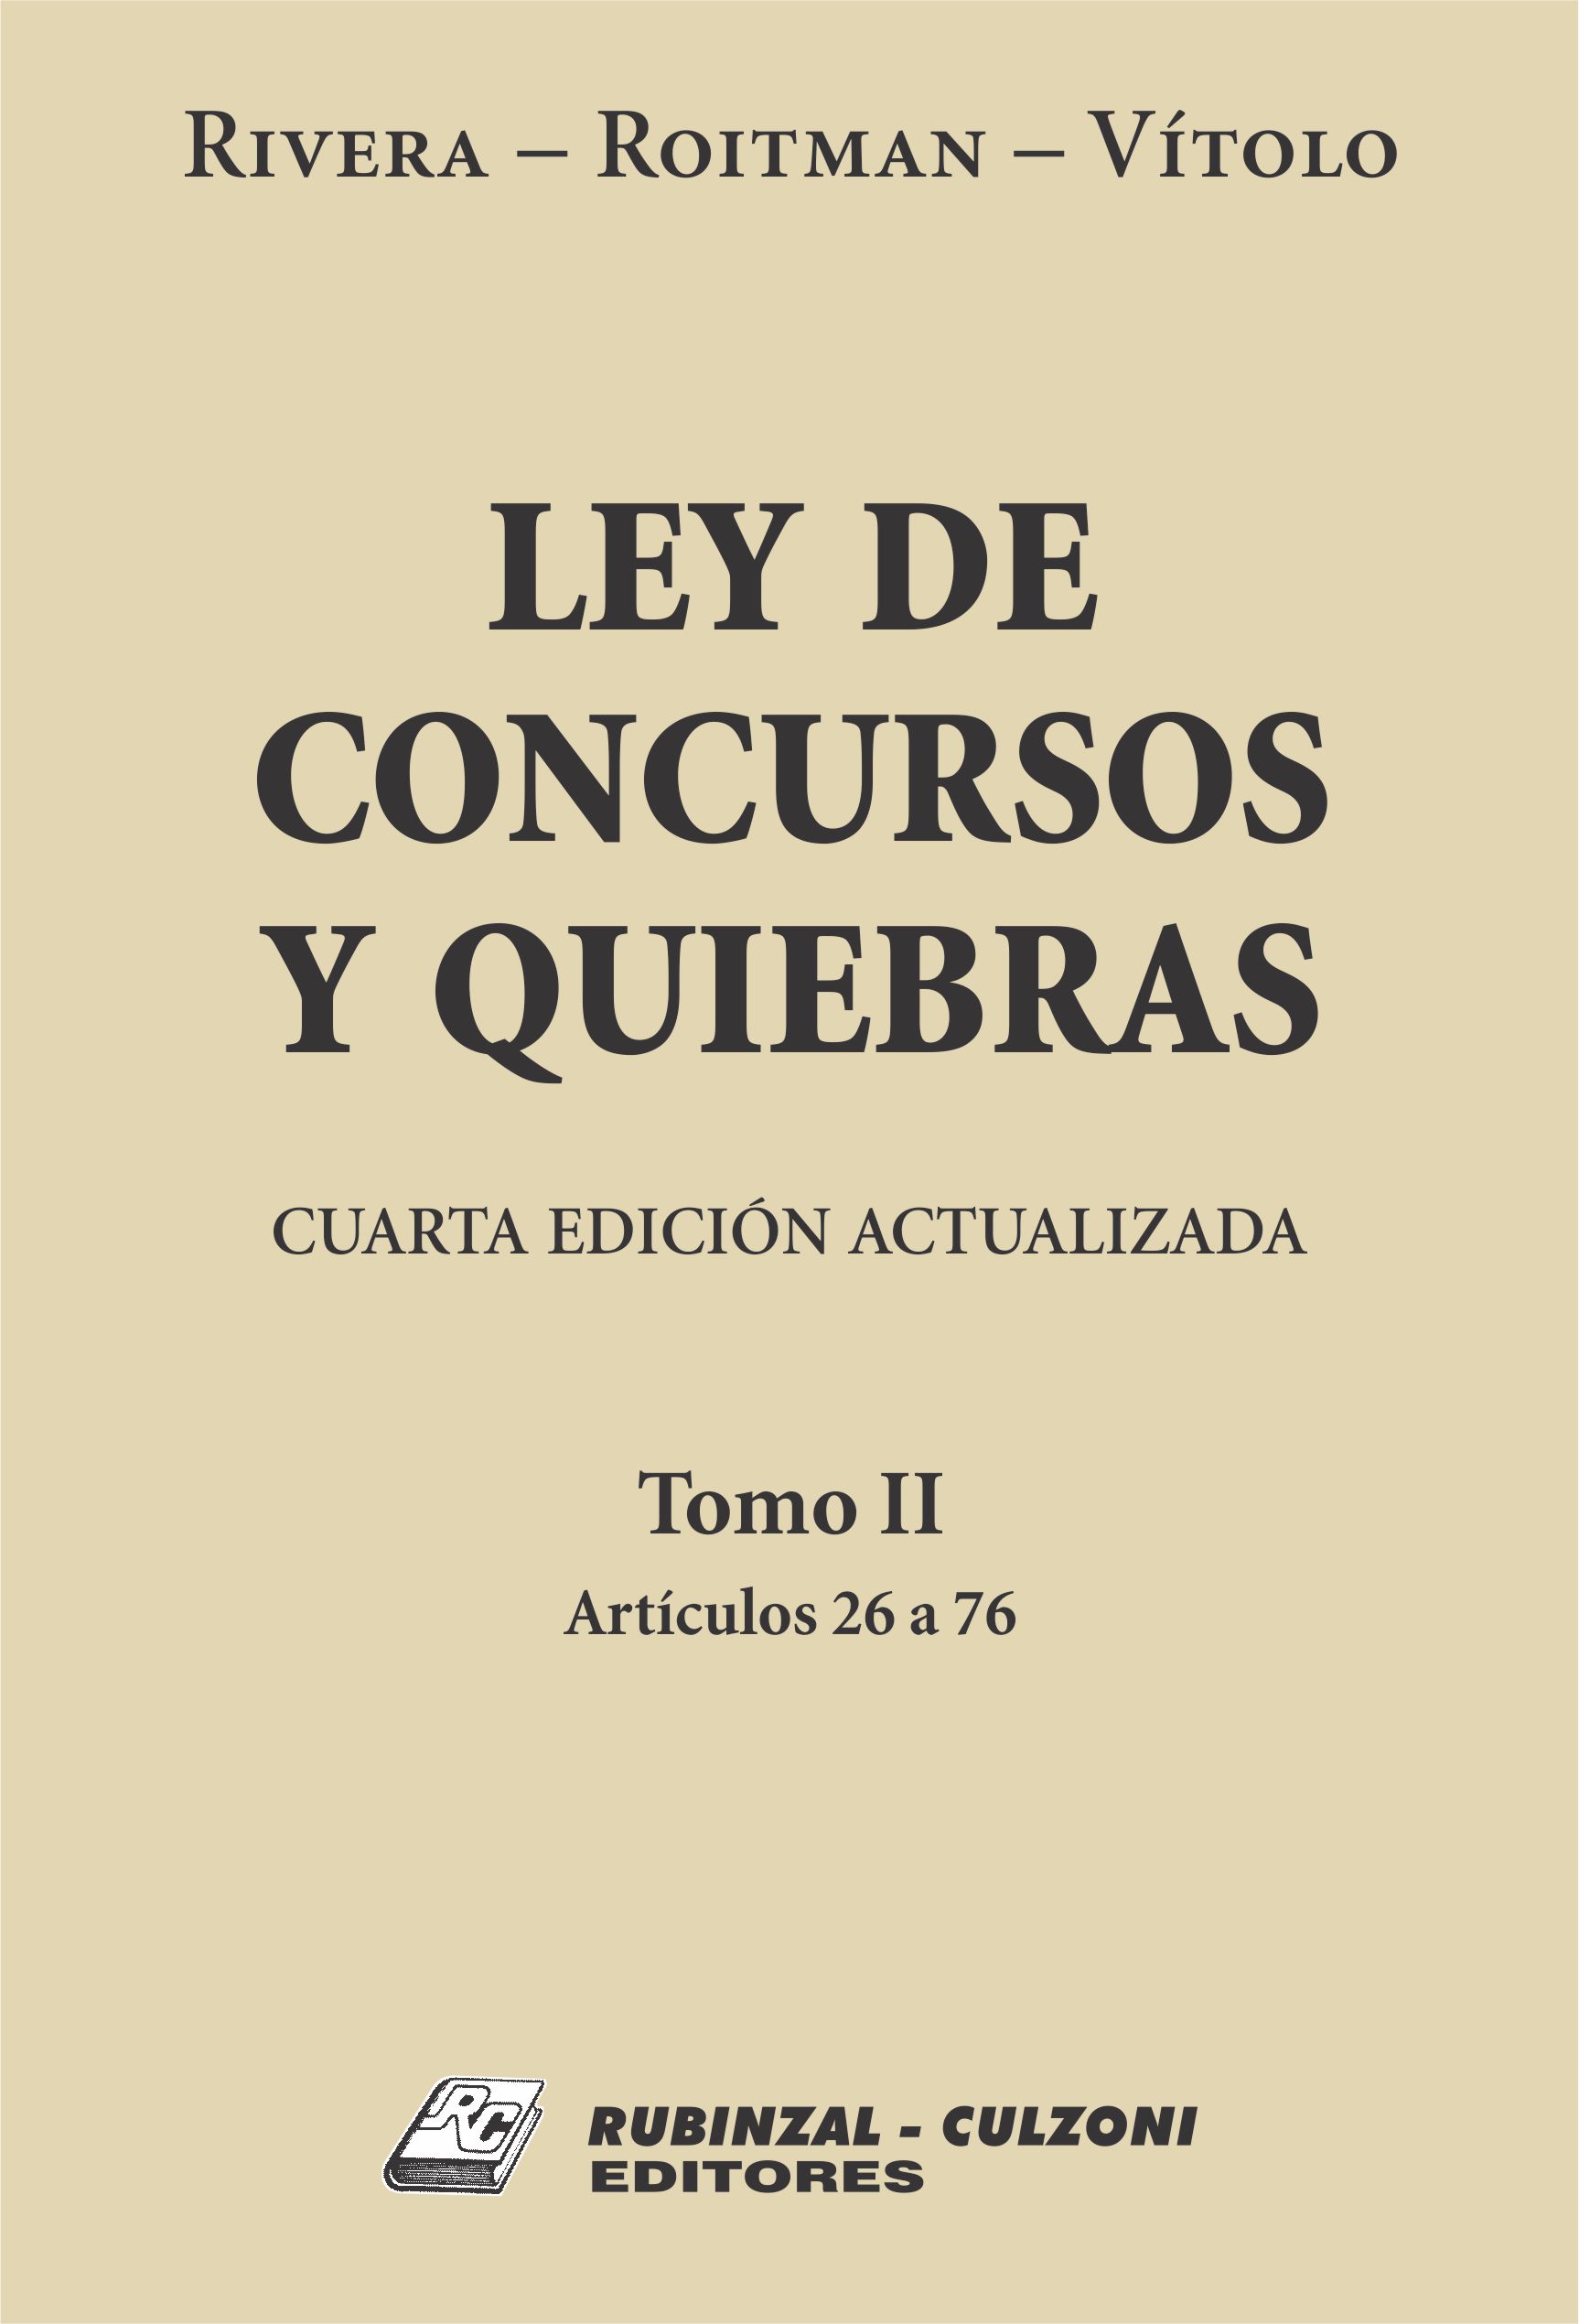 Ley de Concursos y Quiebras. - Tomo II (Artículos 26 a 76). 4ª Edición actualizada.